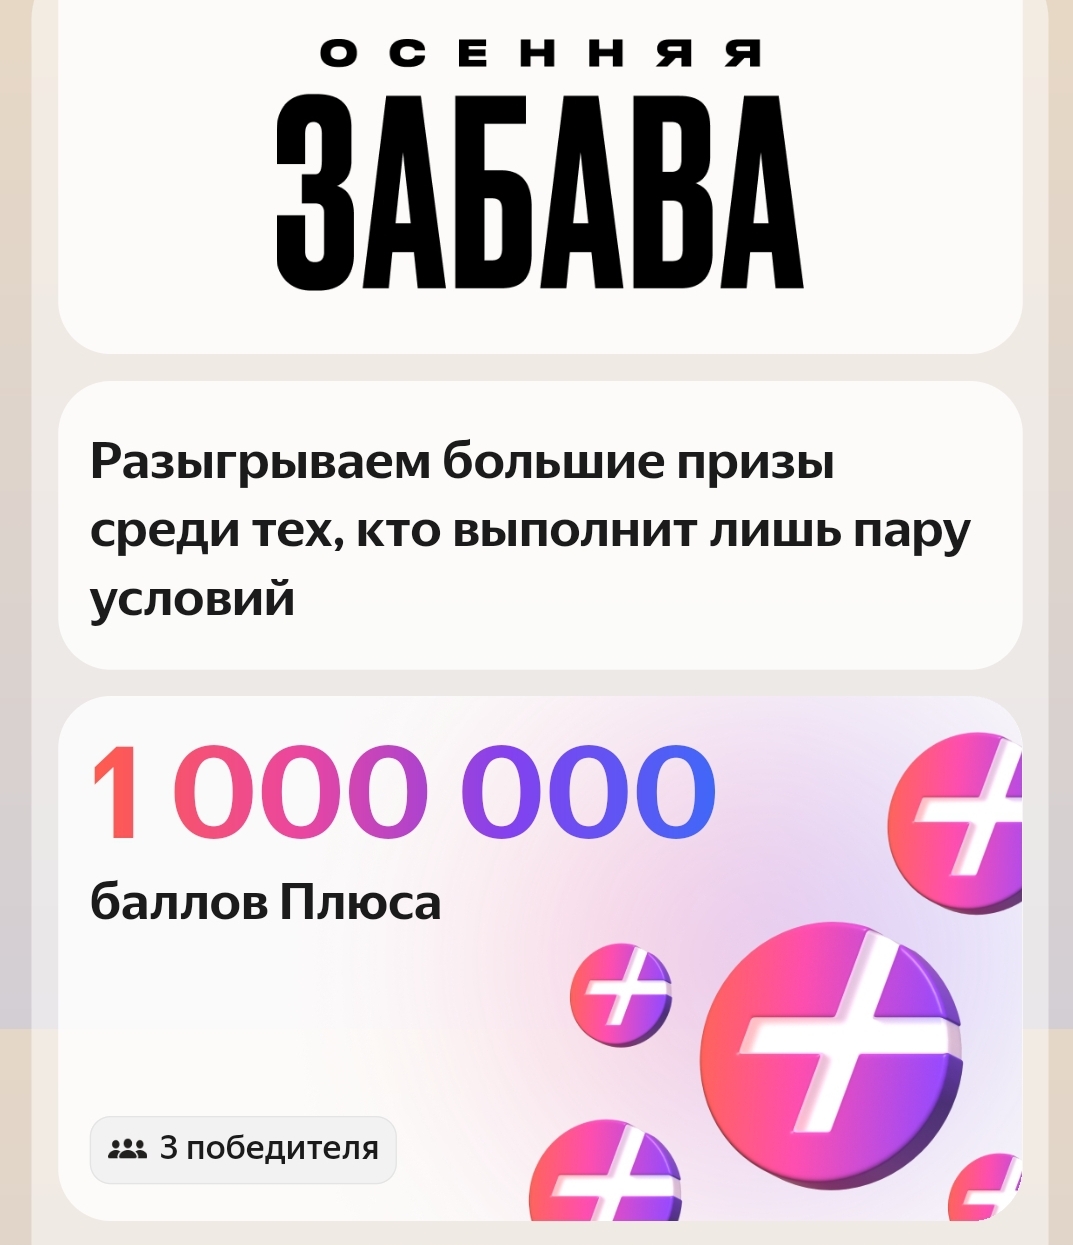 Yandex.Драйв: «Осенняя забава»